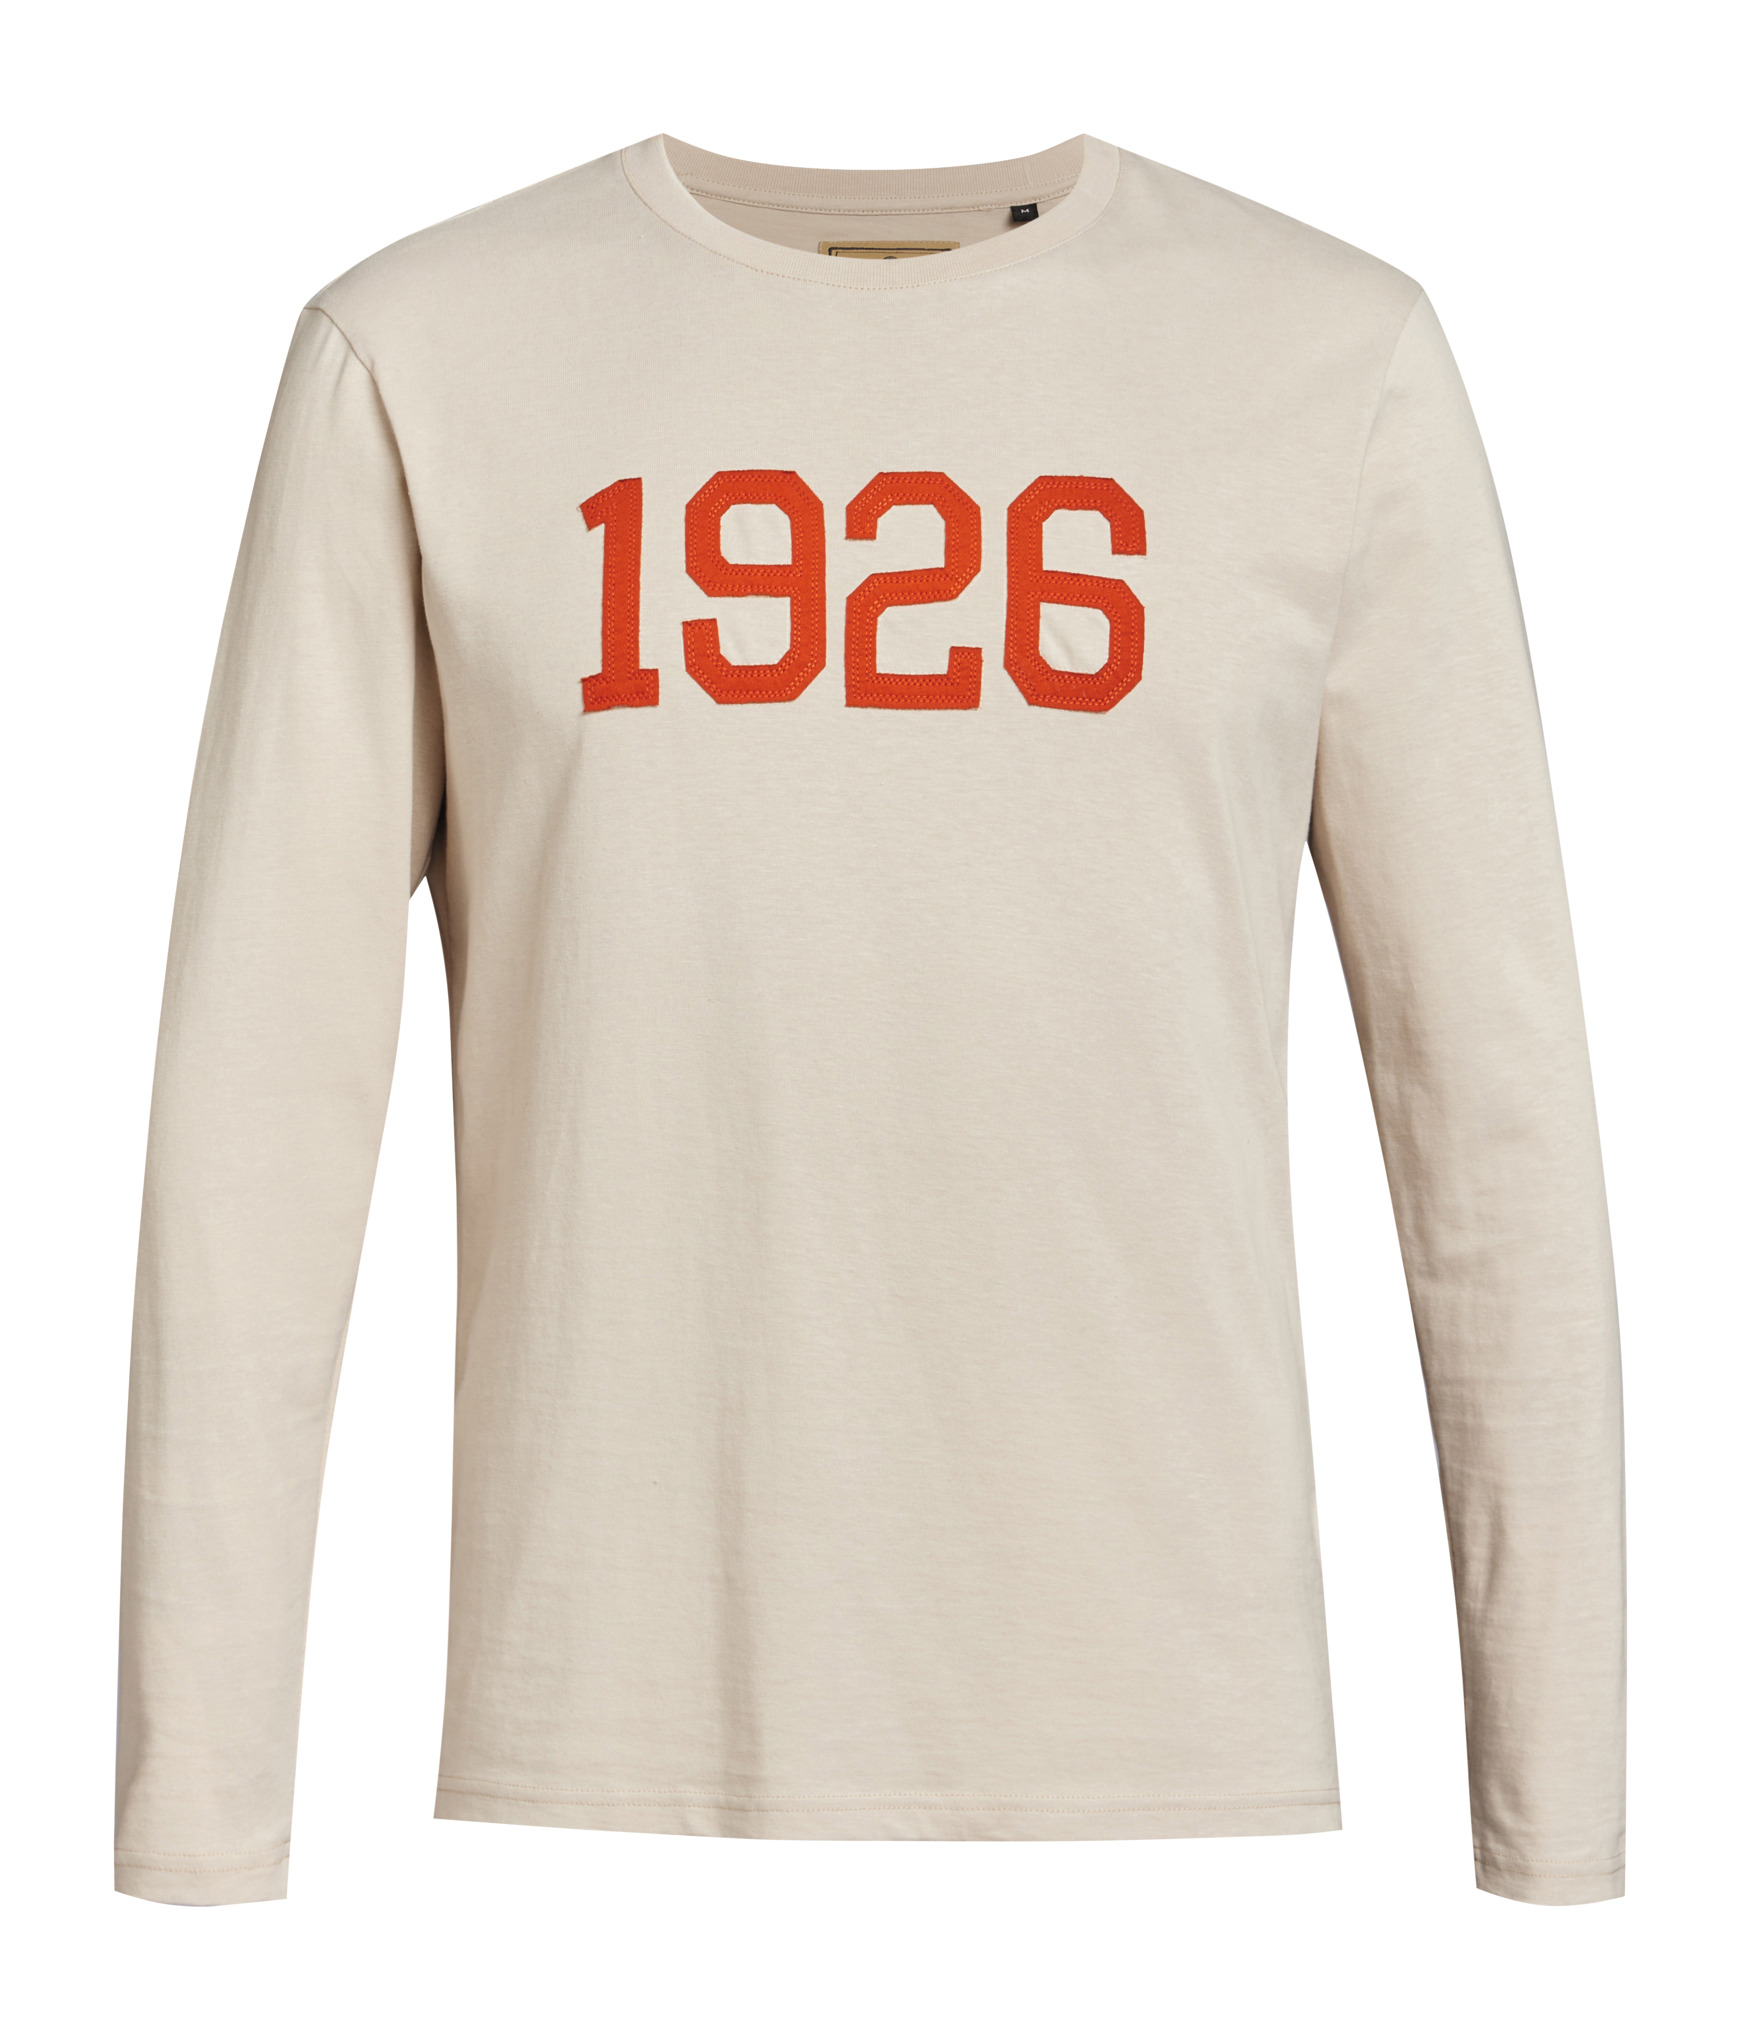 STIHL HERITAGE 1926 long-sleeved shirt